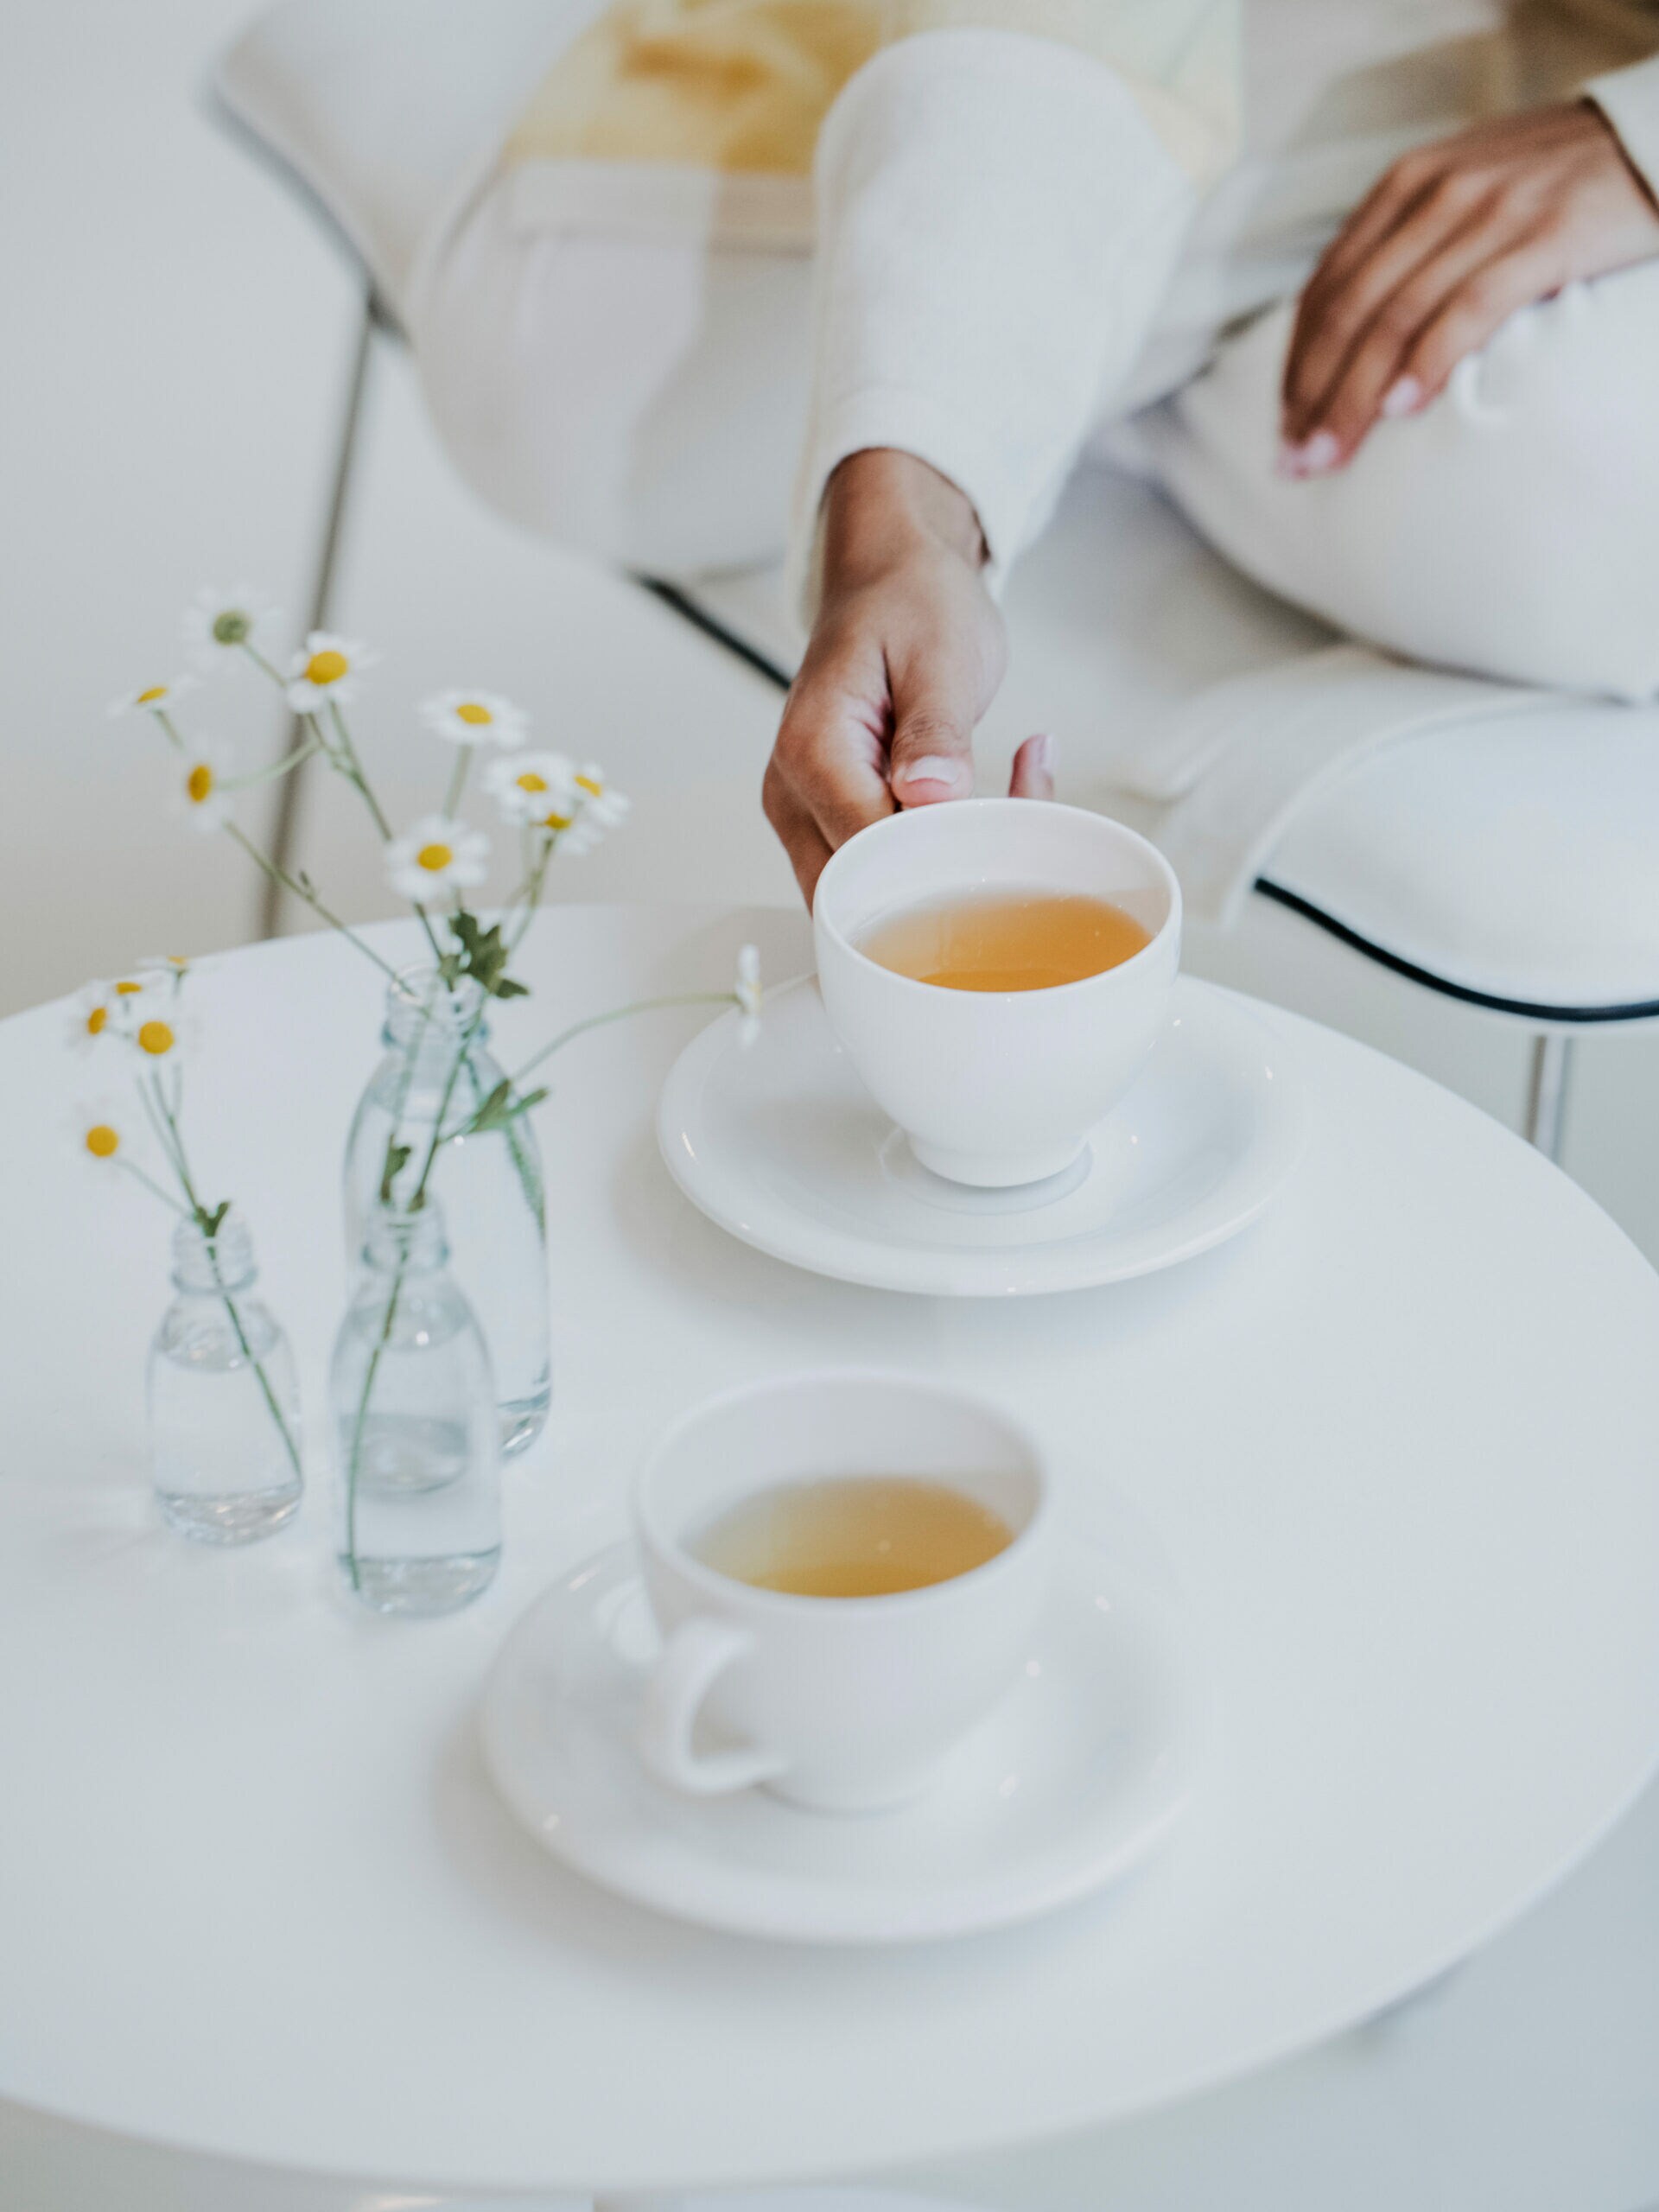 Zwei weiße Tassen mit Tee, die zusammen mit ein paar Margeriten auf einem weißen Tisch stehen